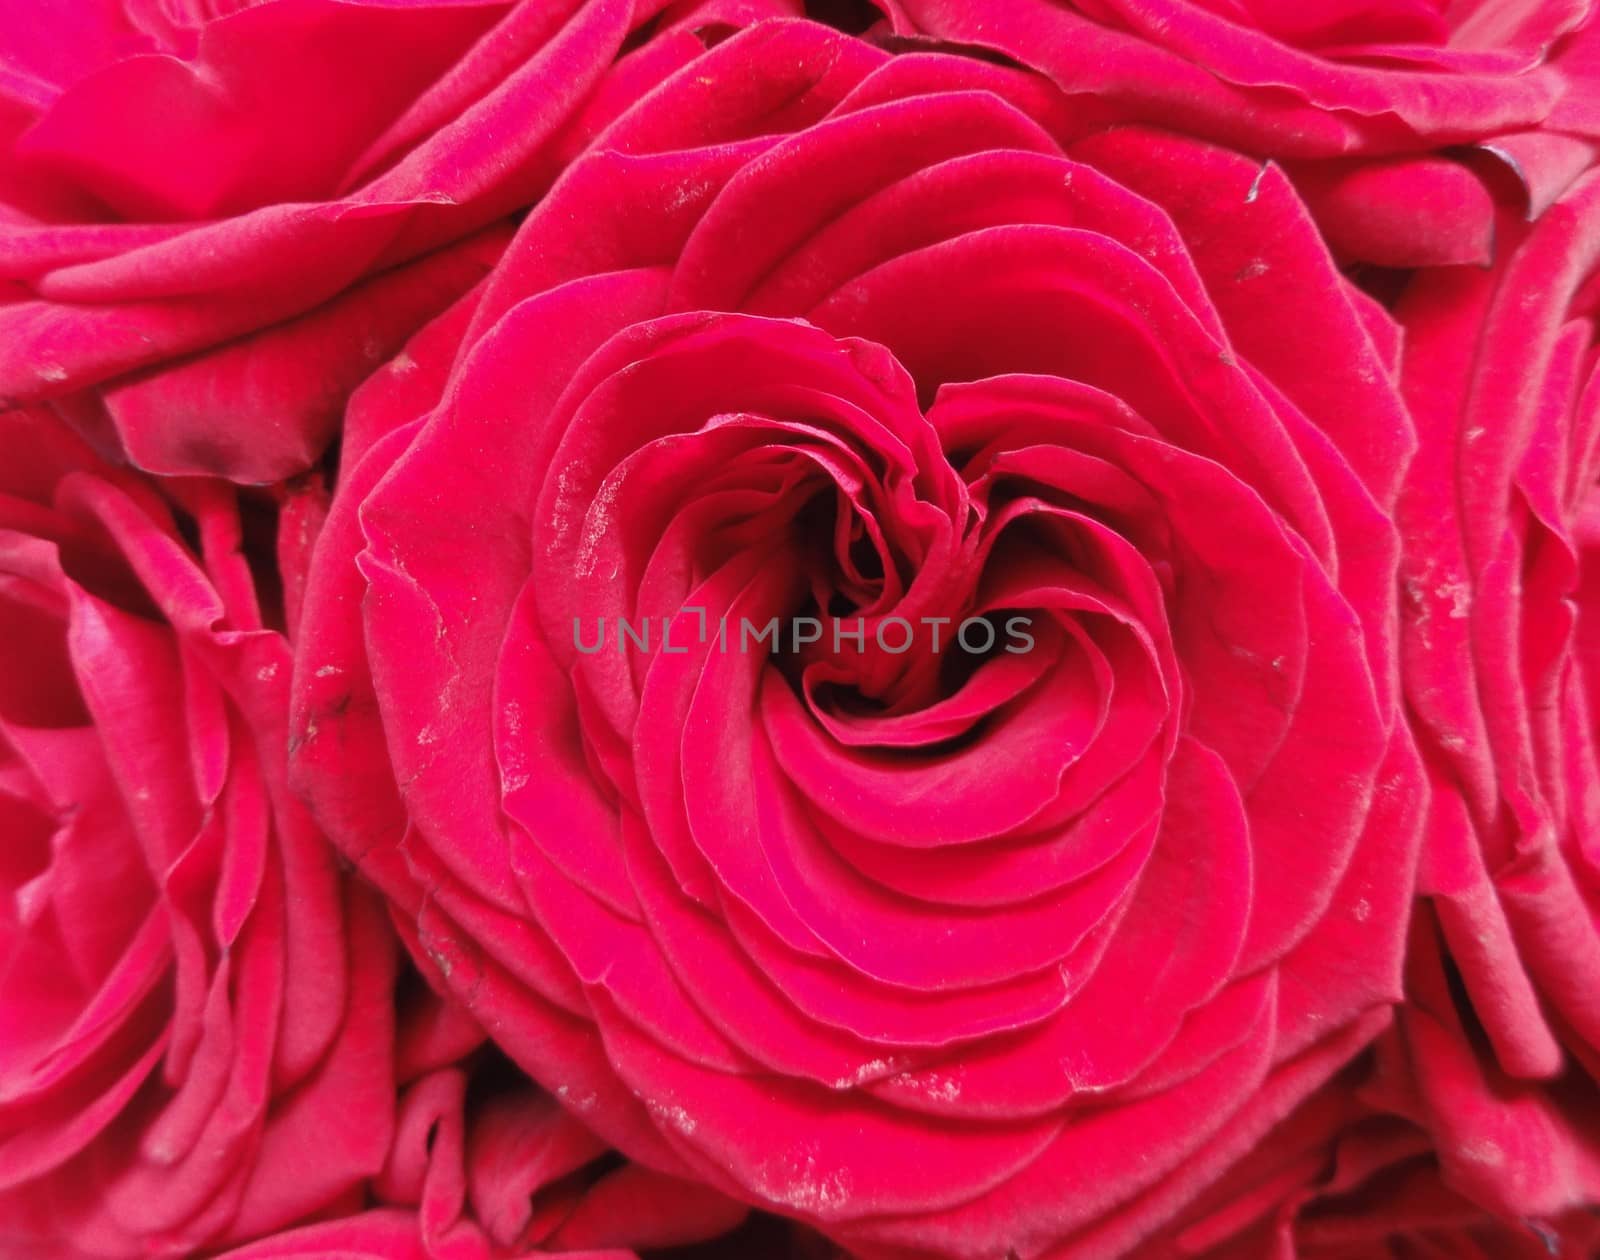 Red Rose Flower by fstockluk